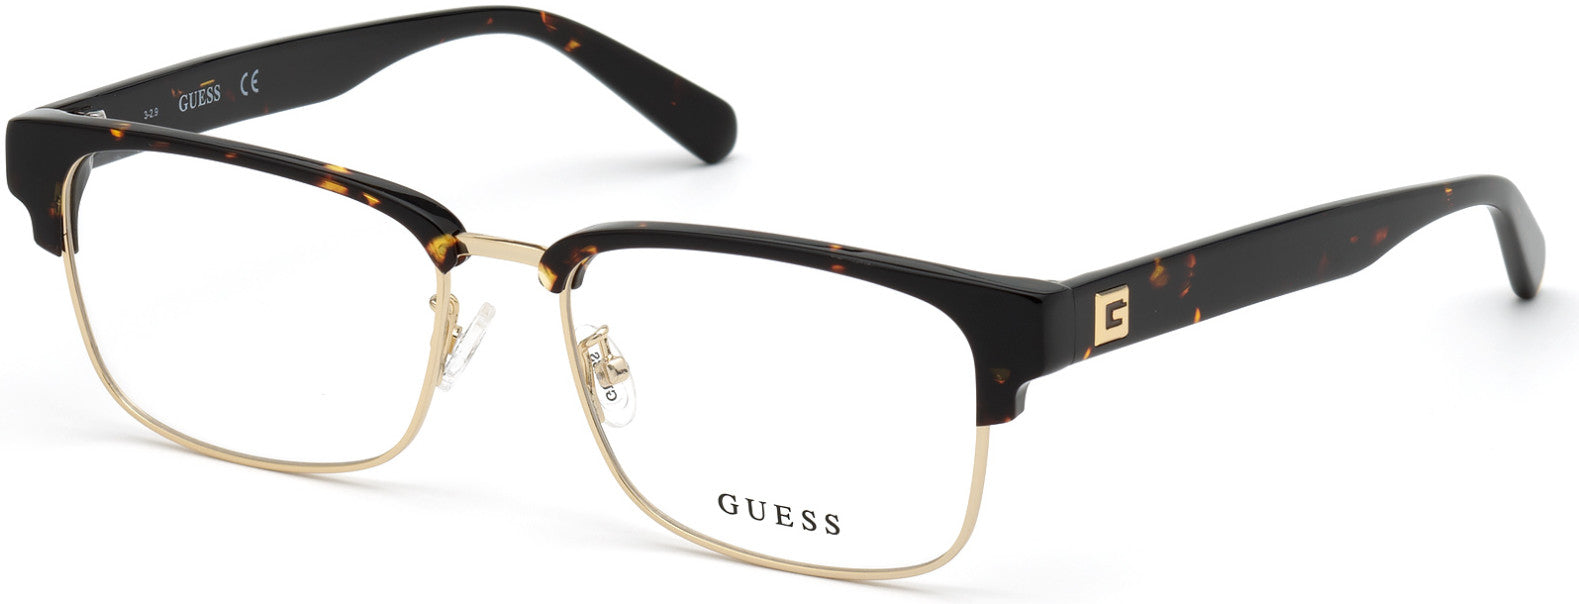 Guess GU50007-D Browline Eyeglasses 052-052 - Dark Havana